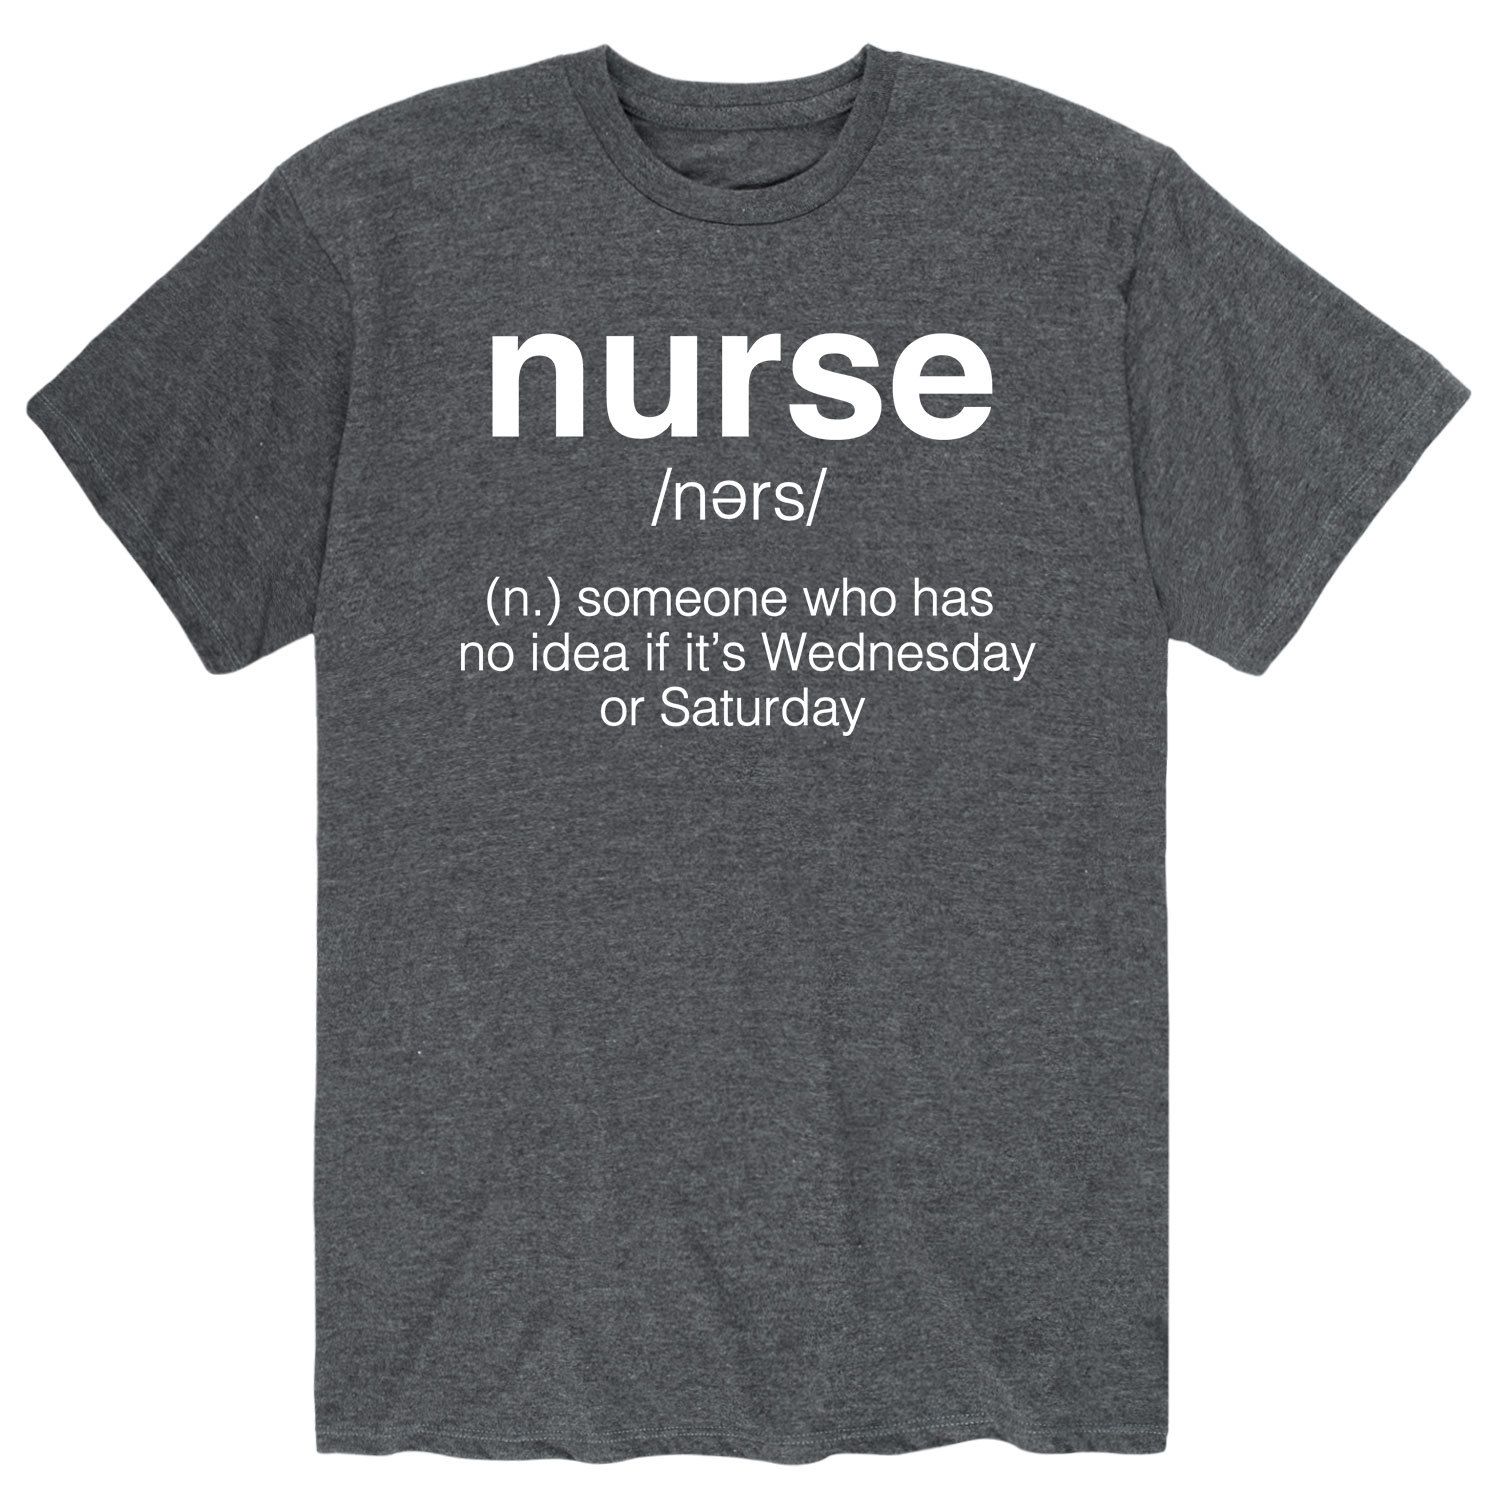 Мужская футболка с изображением медсестры Licensed Character мужская футболка медсестры герои повседневности